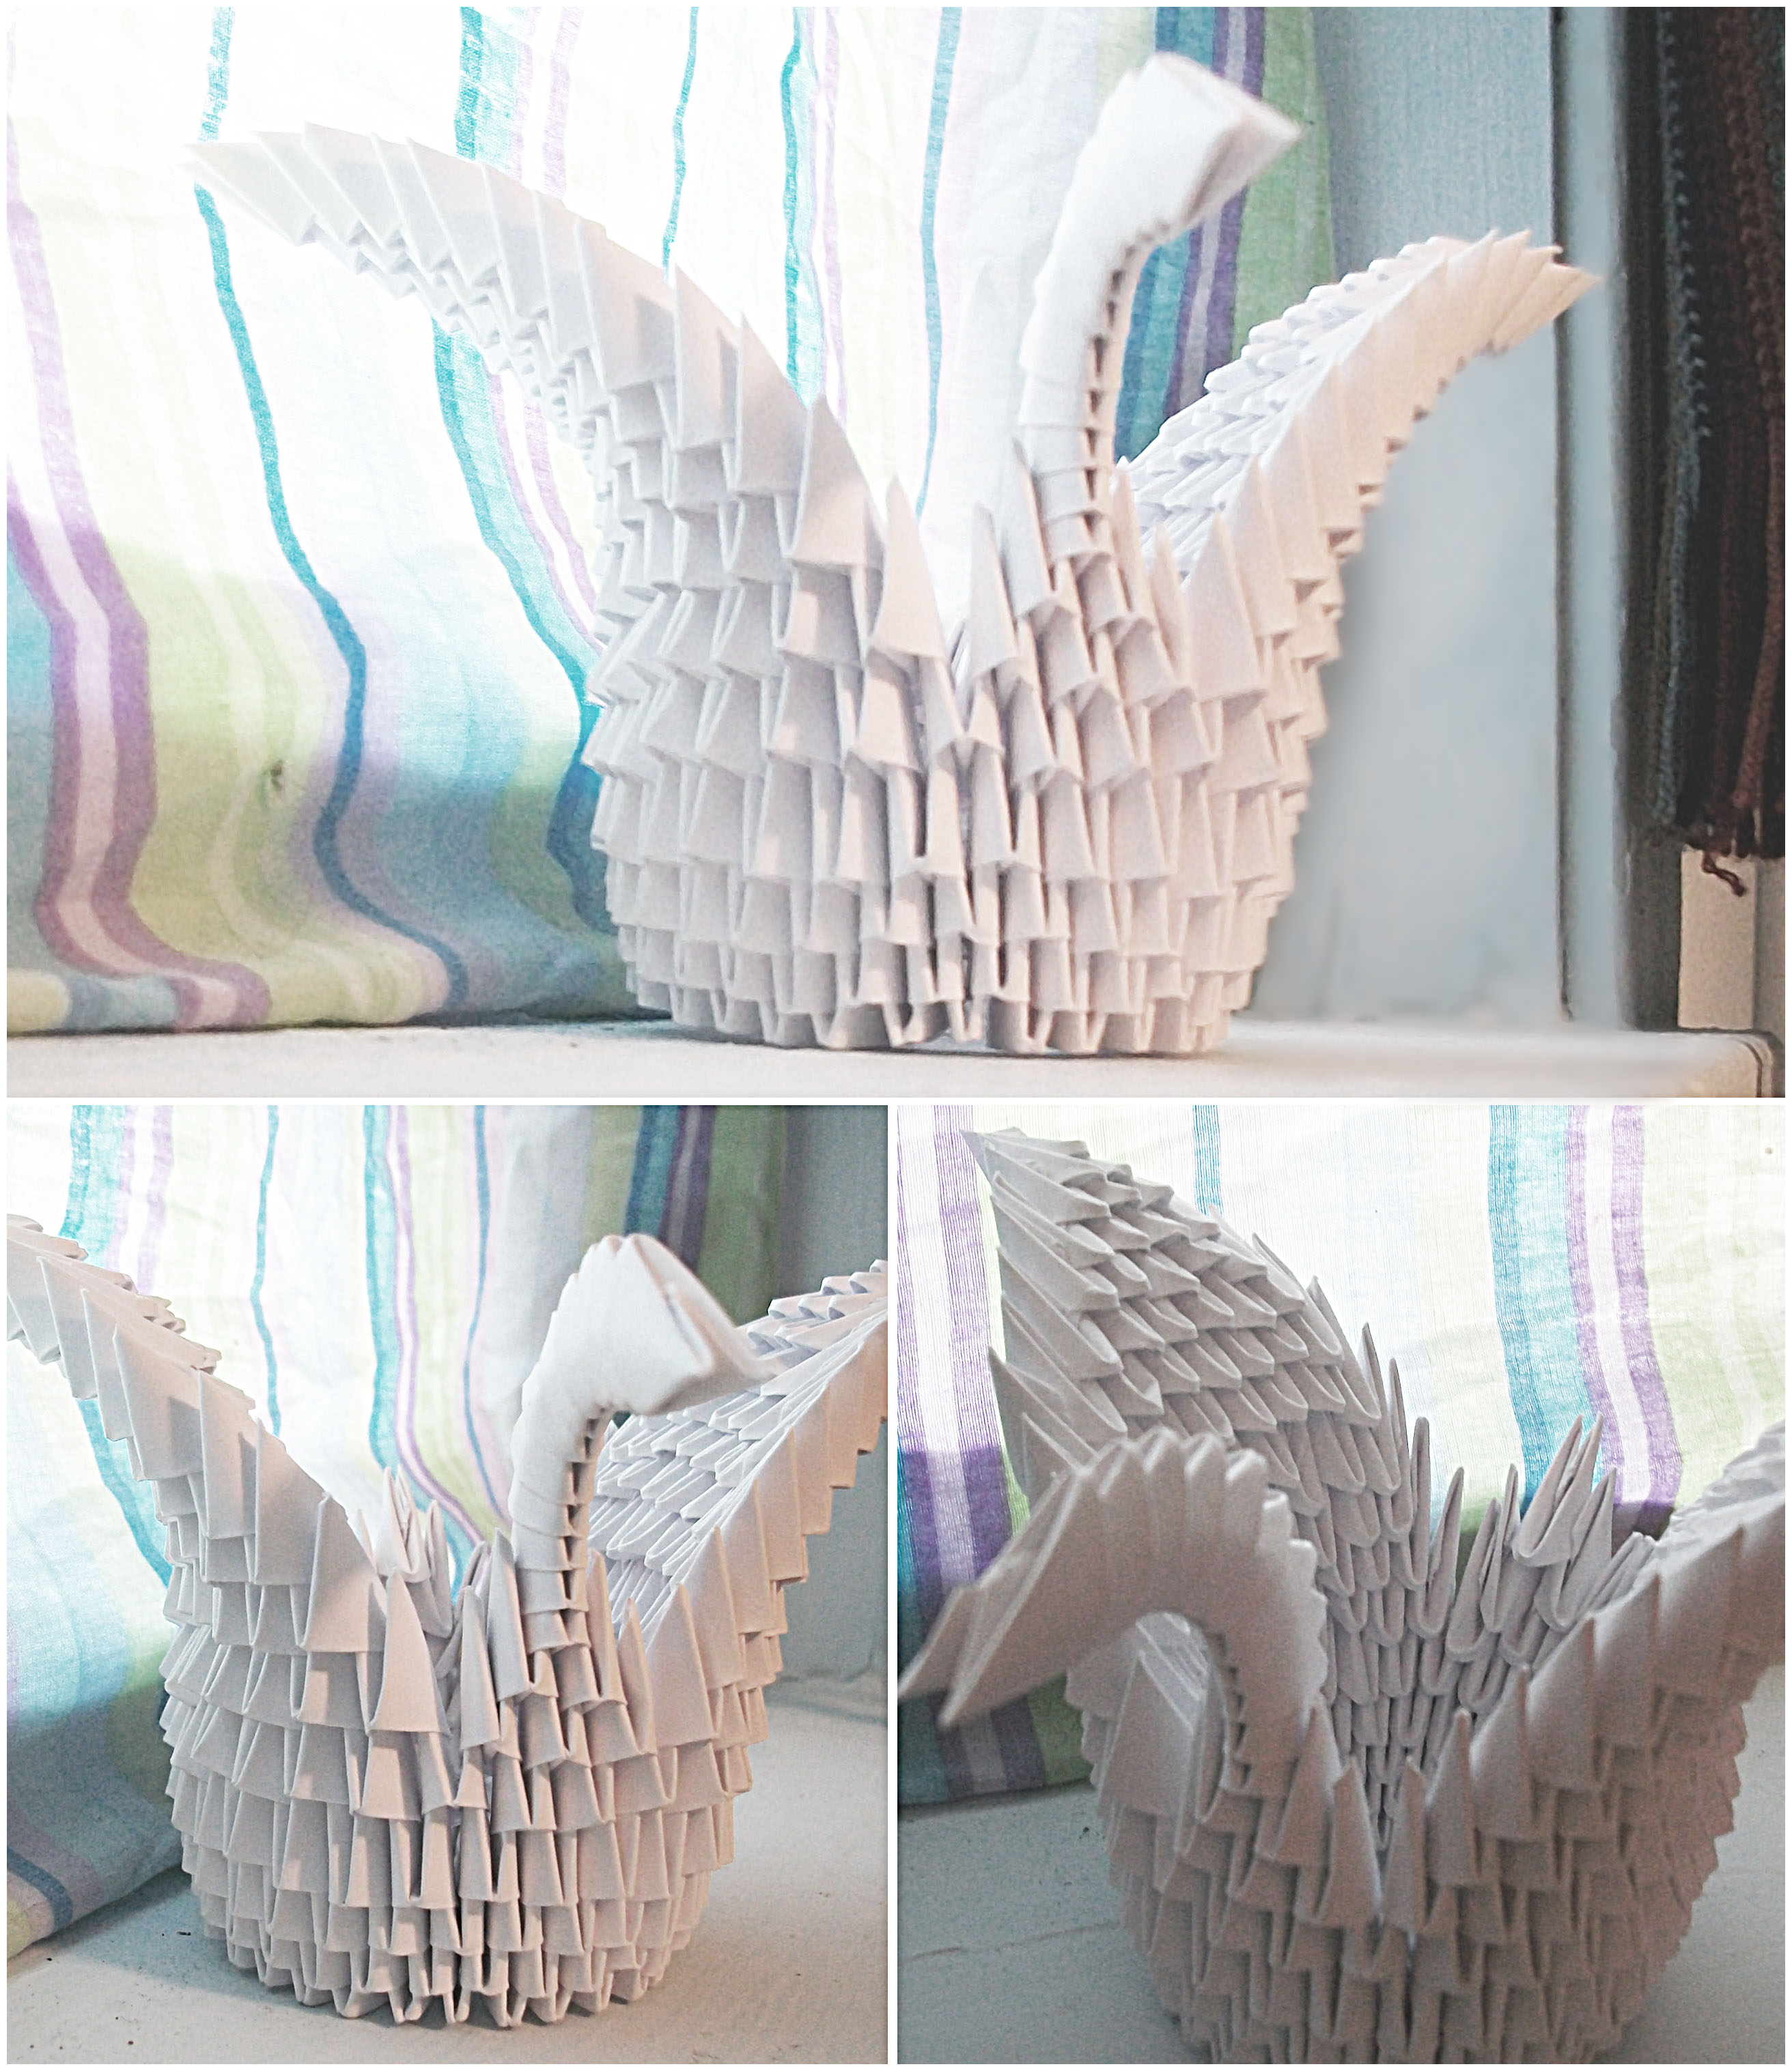 Origami Swan